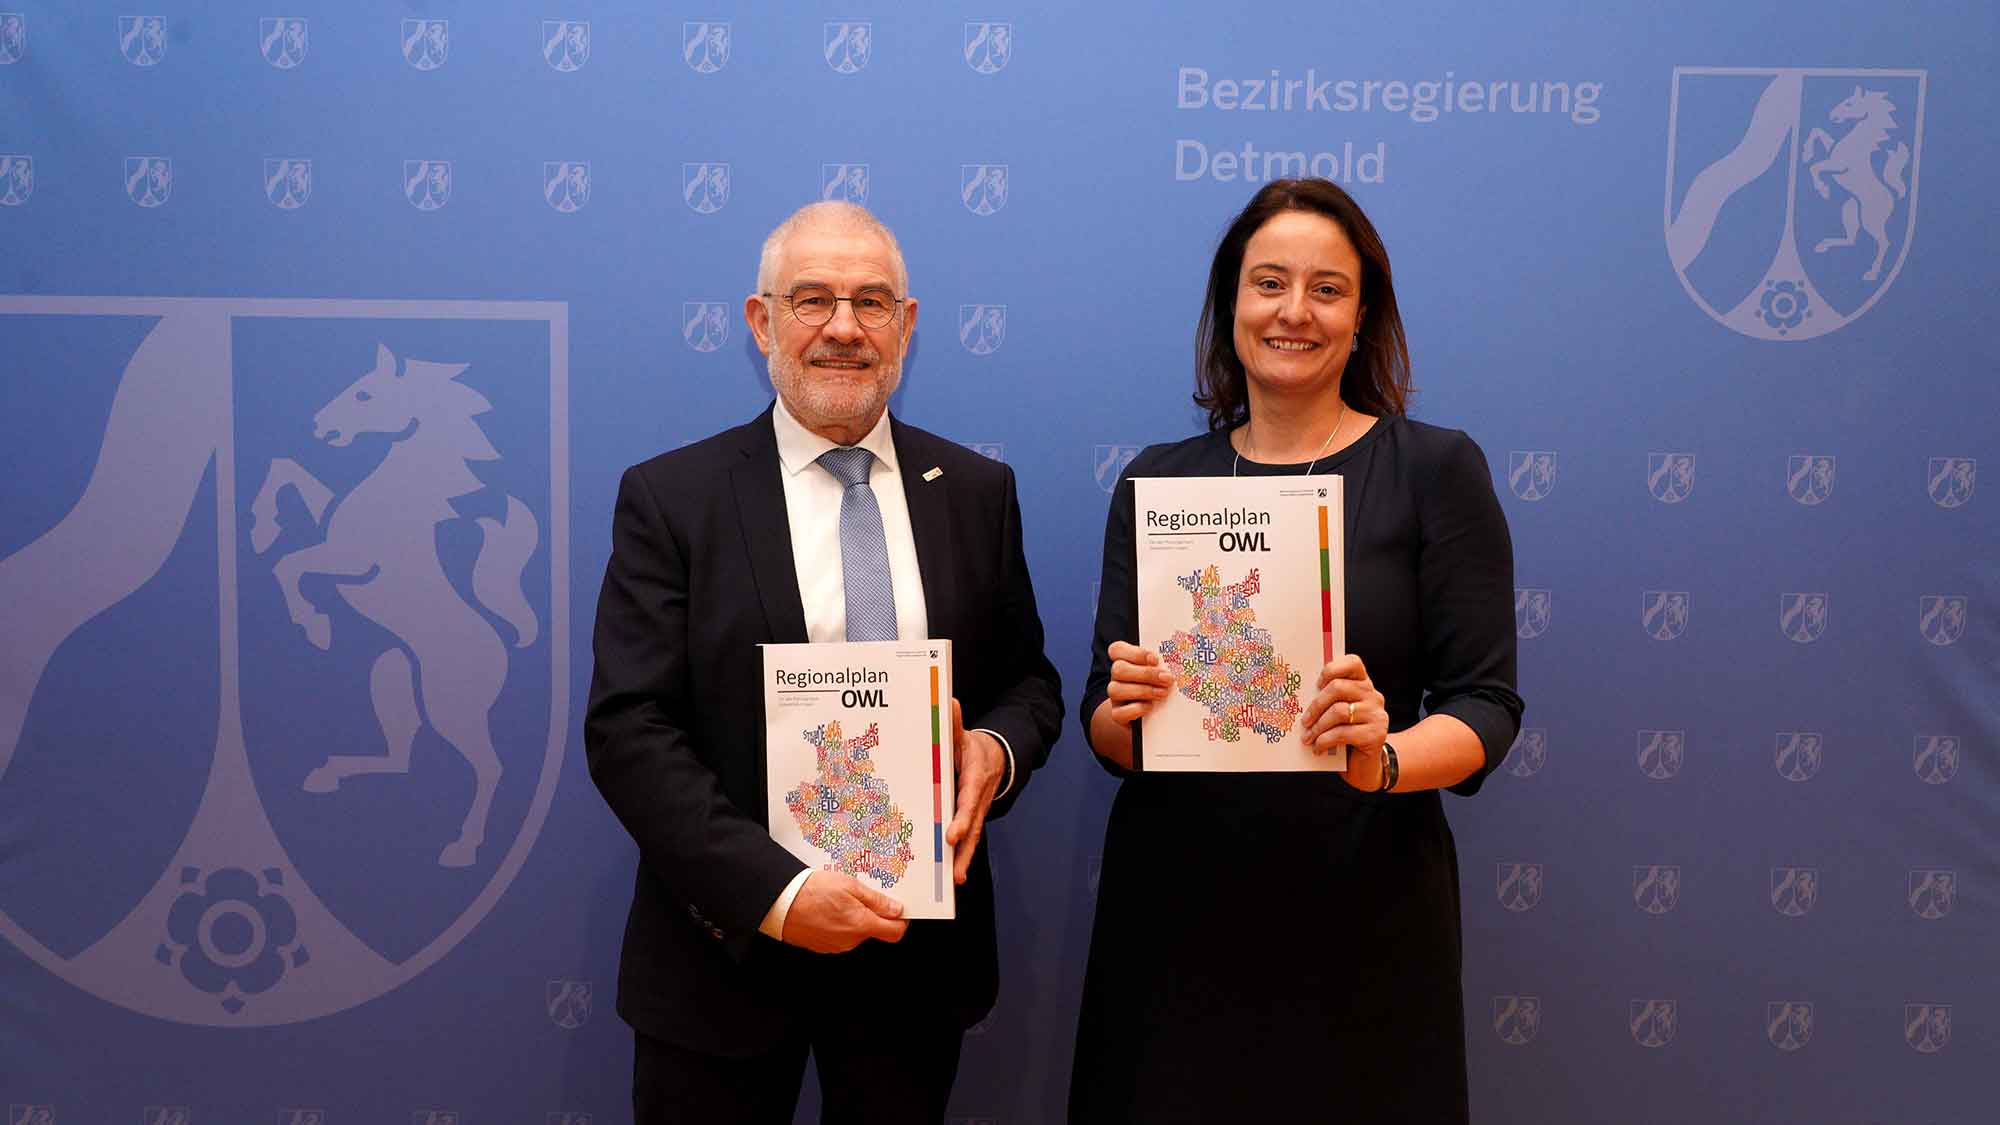 Regionalrat Detmold beschließt Regionalplan für Ostwestfalen Lippe